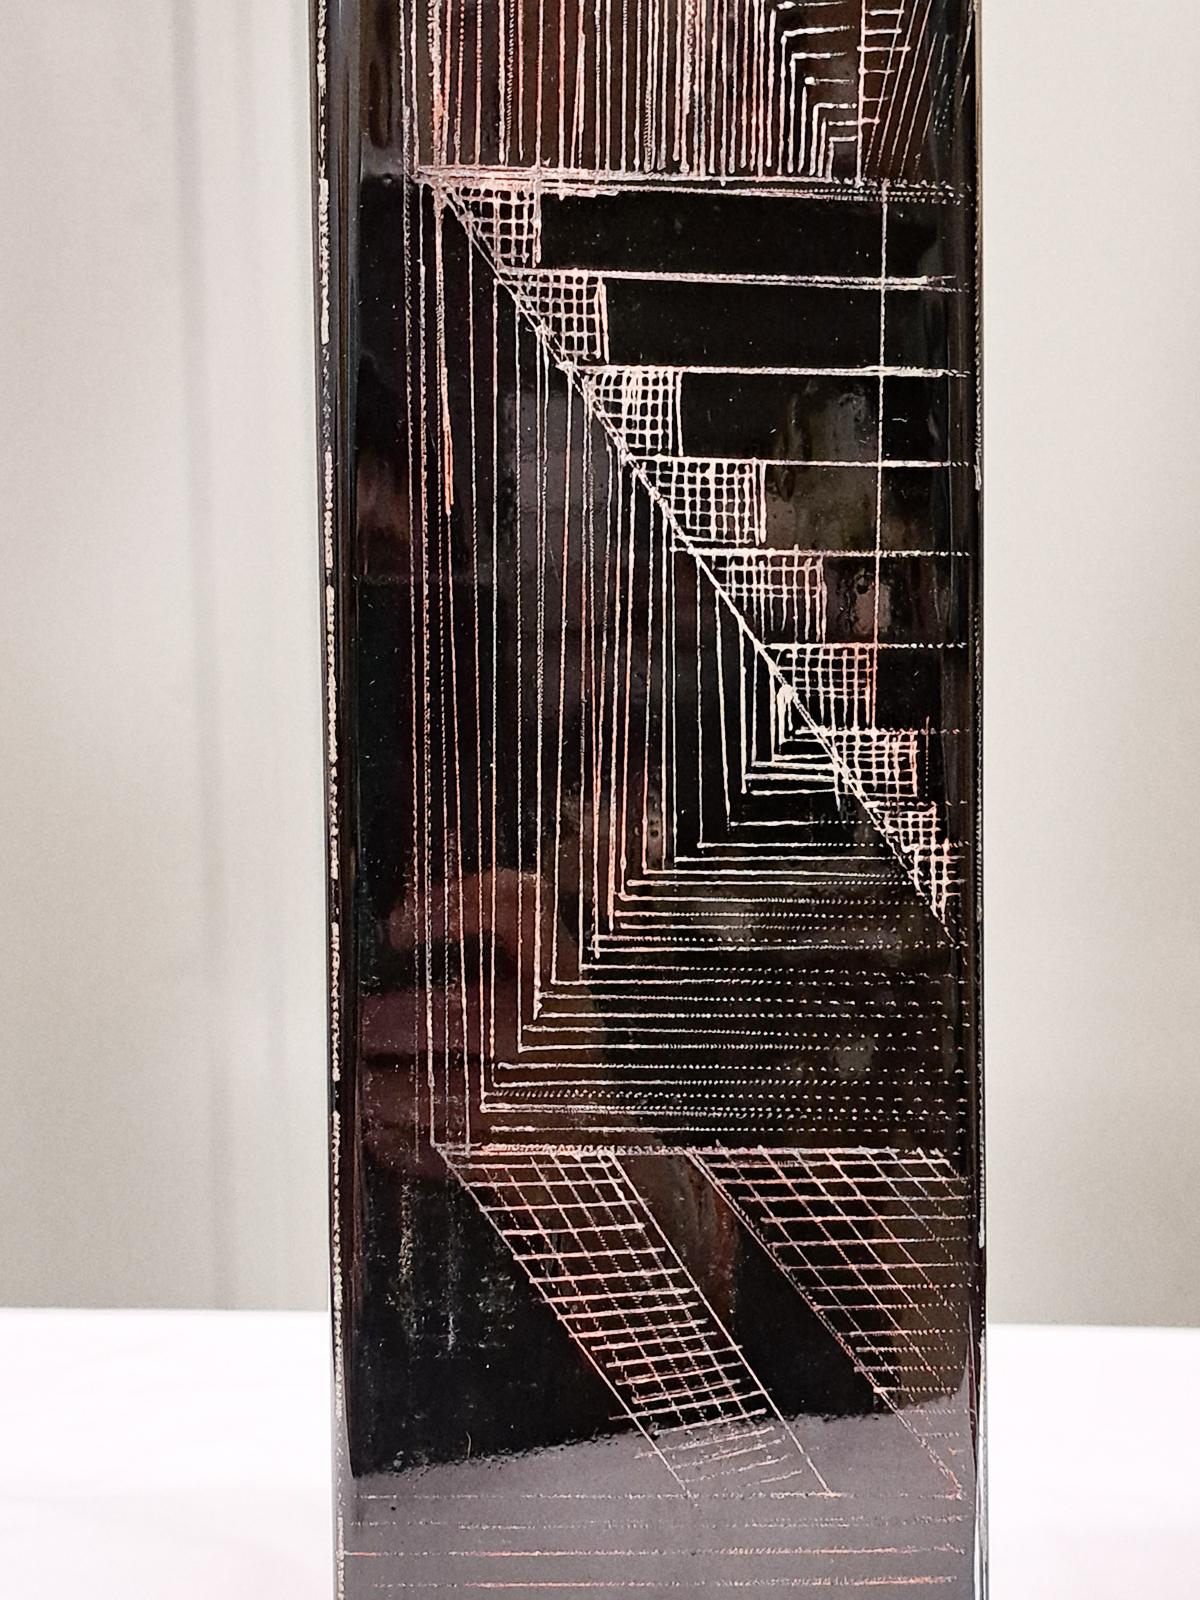 Anatole Riecke, schwarze Vase, graviertes Glas, signiert und datiert,  20. Jahrhundert. Diese Serie zeigt den landschaftlichen Aufstieg von N.Y. 

Ein atemberaubendes Kunstwerk, alles Unikate, unverwechselbare Vasen, die mit kubistischen Ätzmotiven